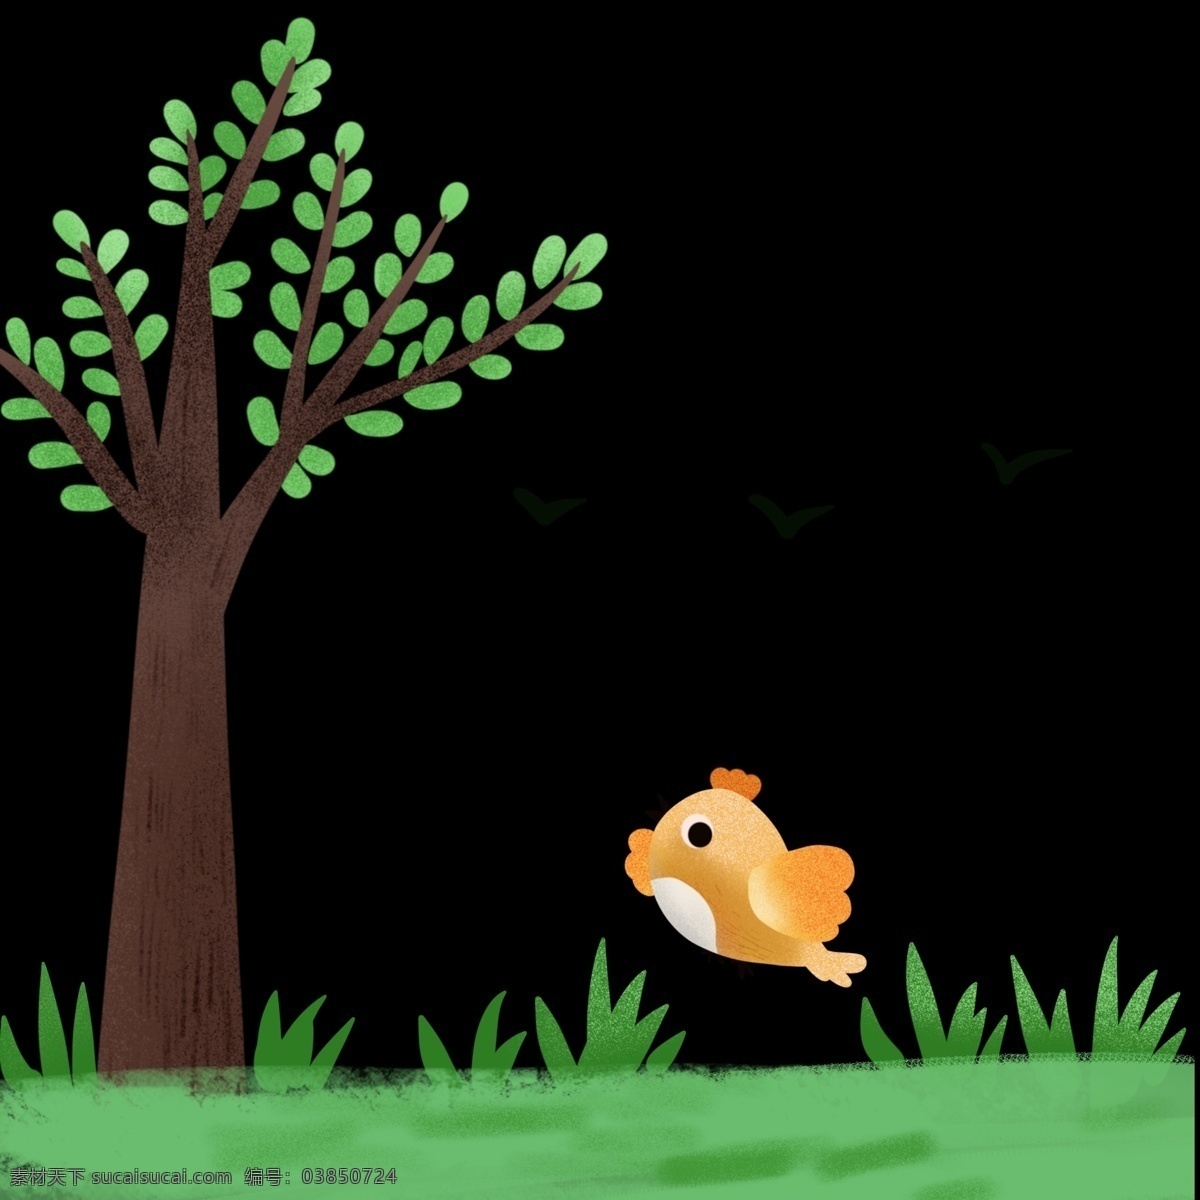 夏季 春季 绿色 树木 草地 免 抠 图 季节海报设计 树木草地 手绘可爱小鸡 儿童 宣传海报